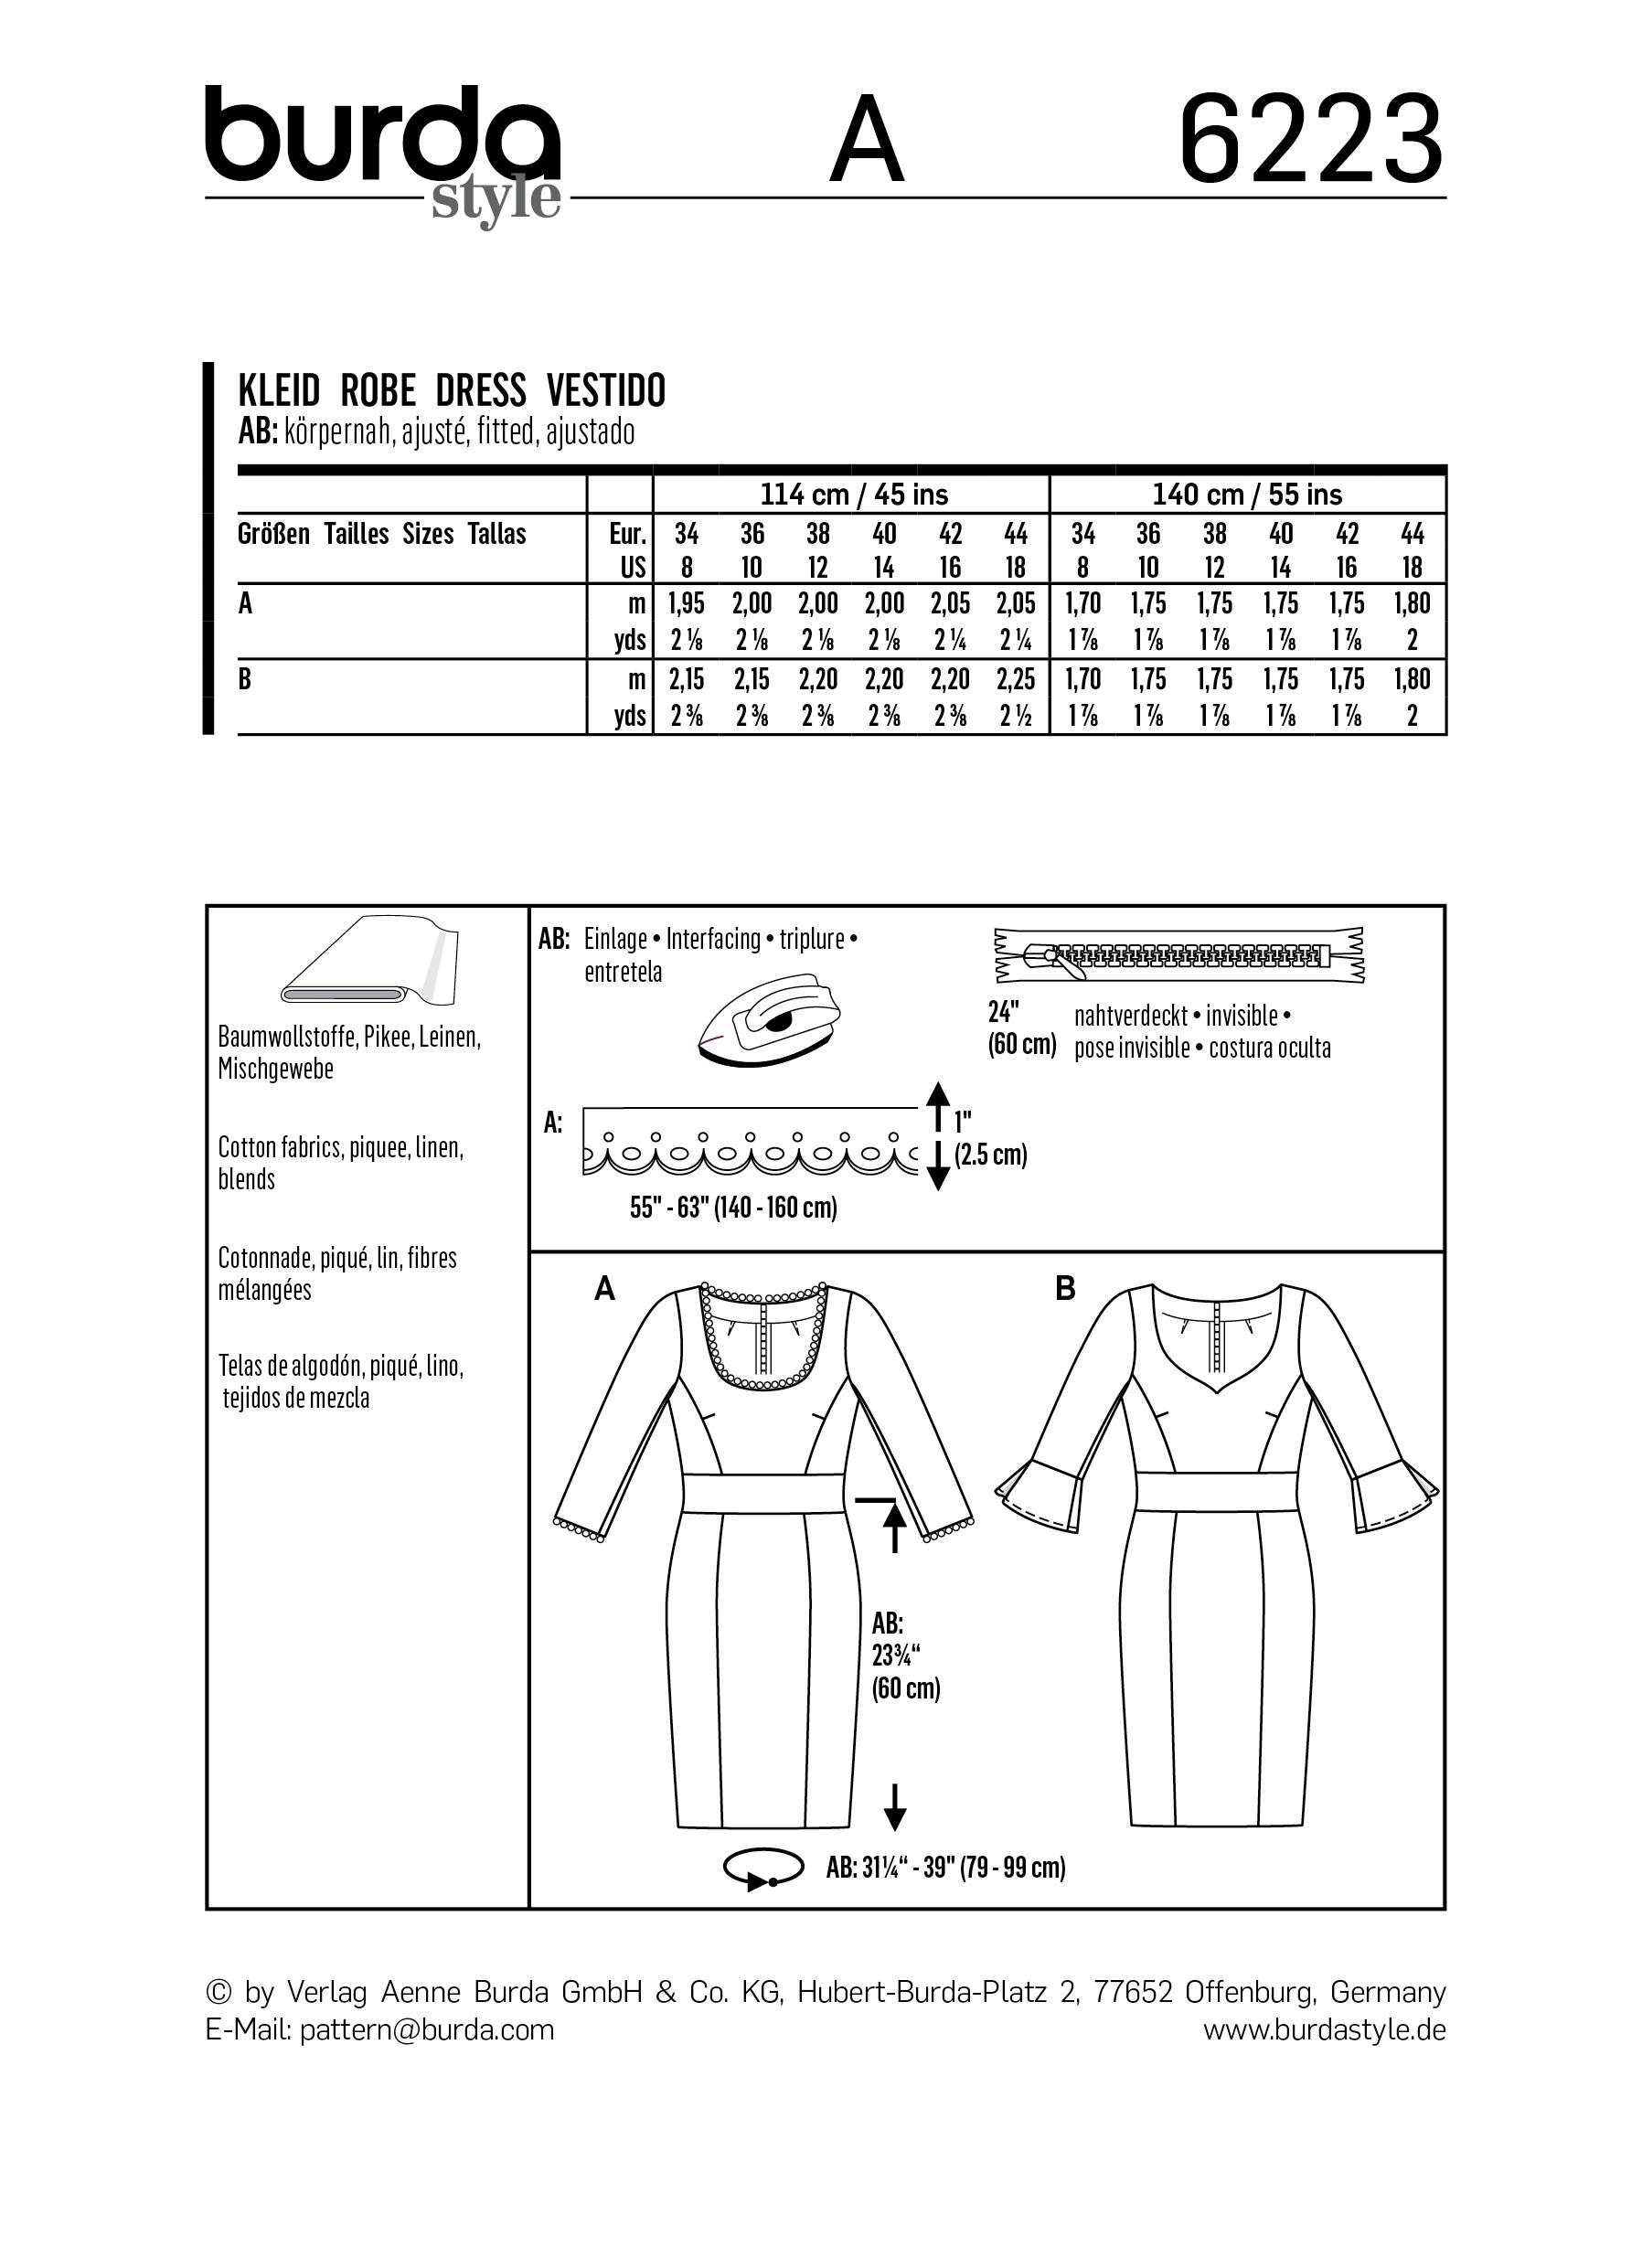 Burda B6223 Dress Sewing Pattern